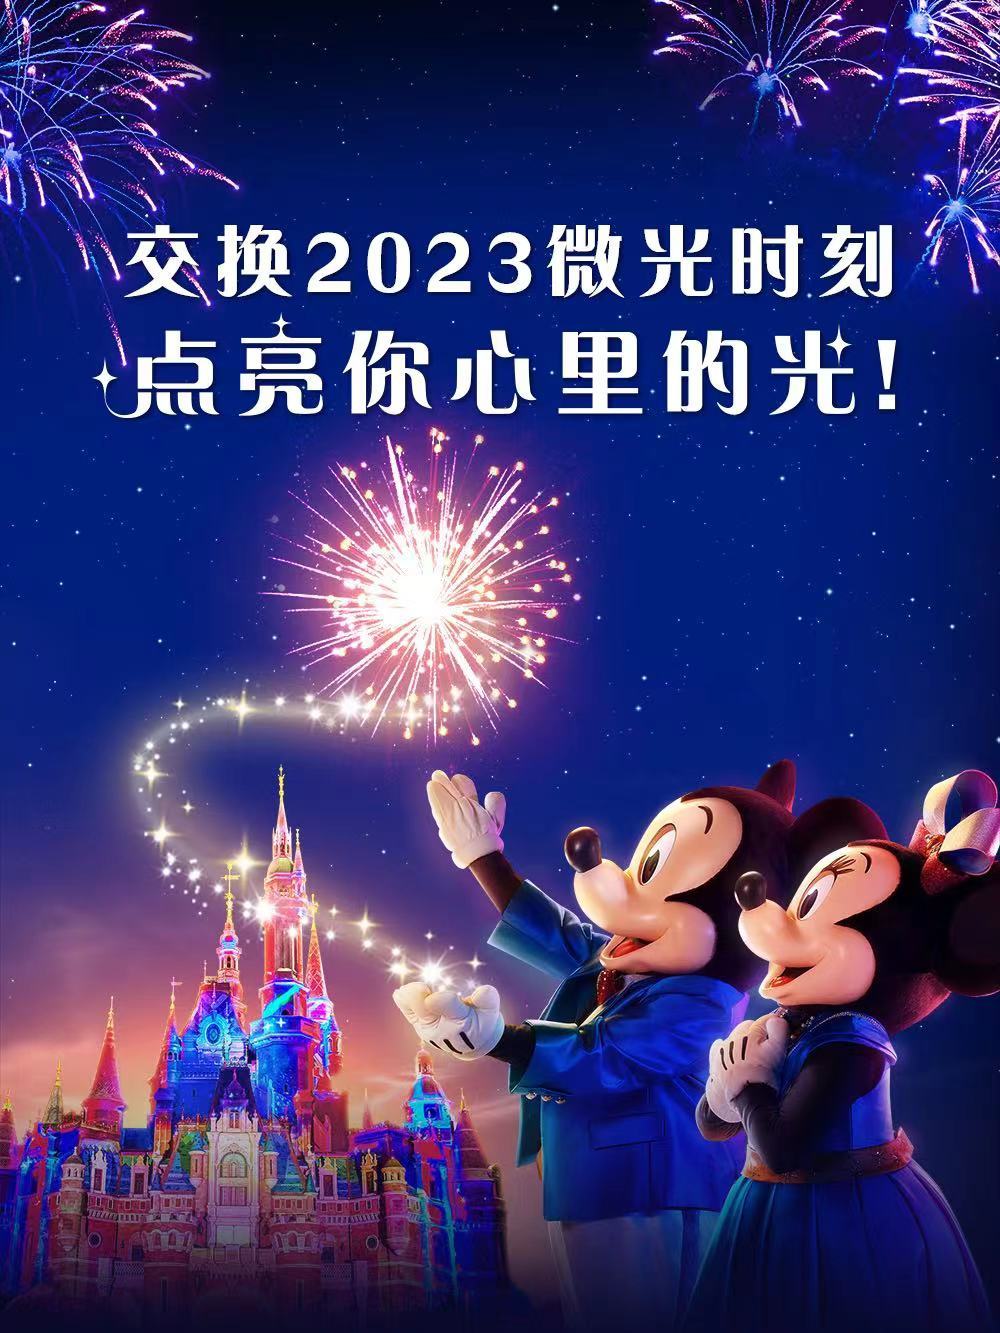 上海迪士尼除夕夜的「點亮新一年」特別夜間演出取消煙花效果。